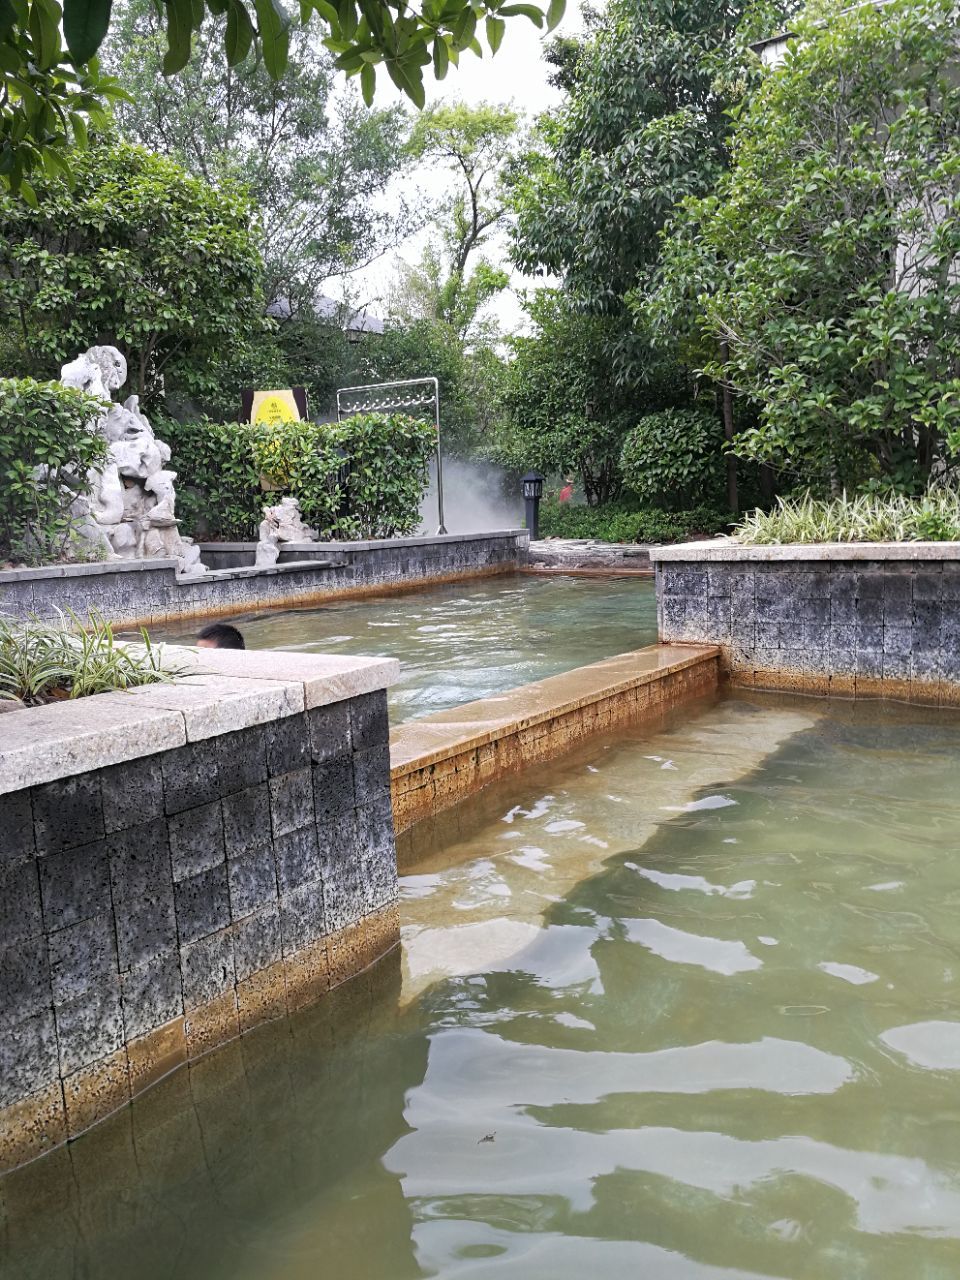 2023深业半汤御泉庄温泉玩乐攻略,其独特的魅力在于此温泉是